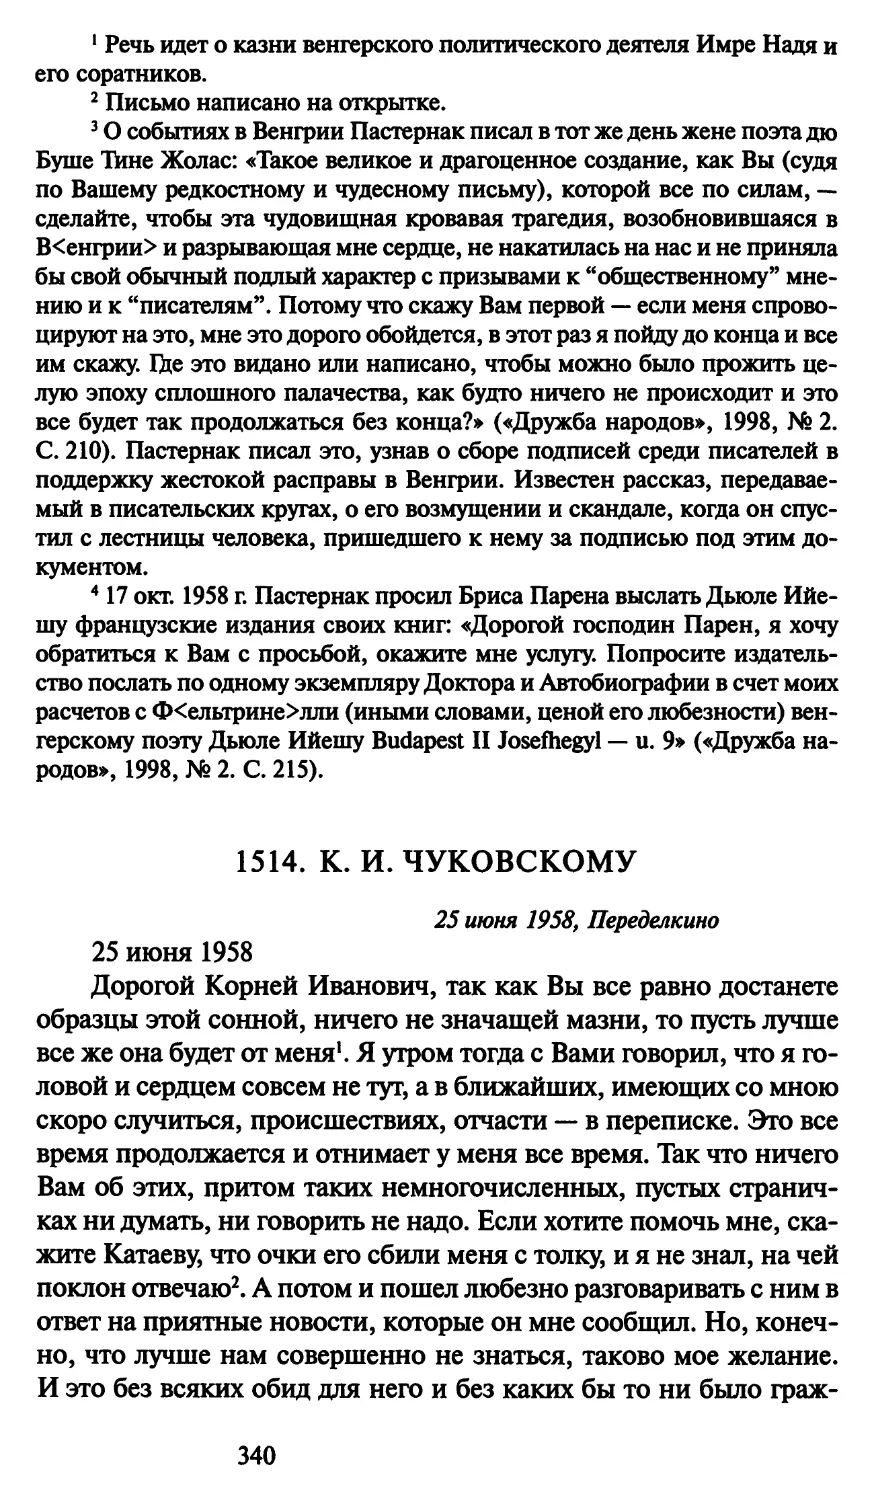 1514. К. И. Чуковскому 25 июня 1958